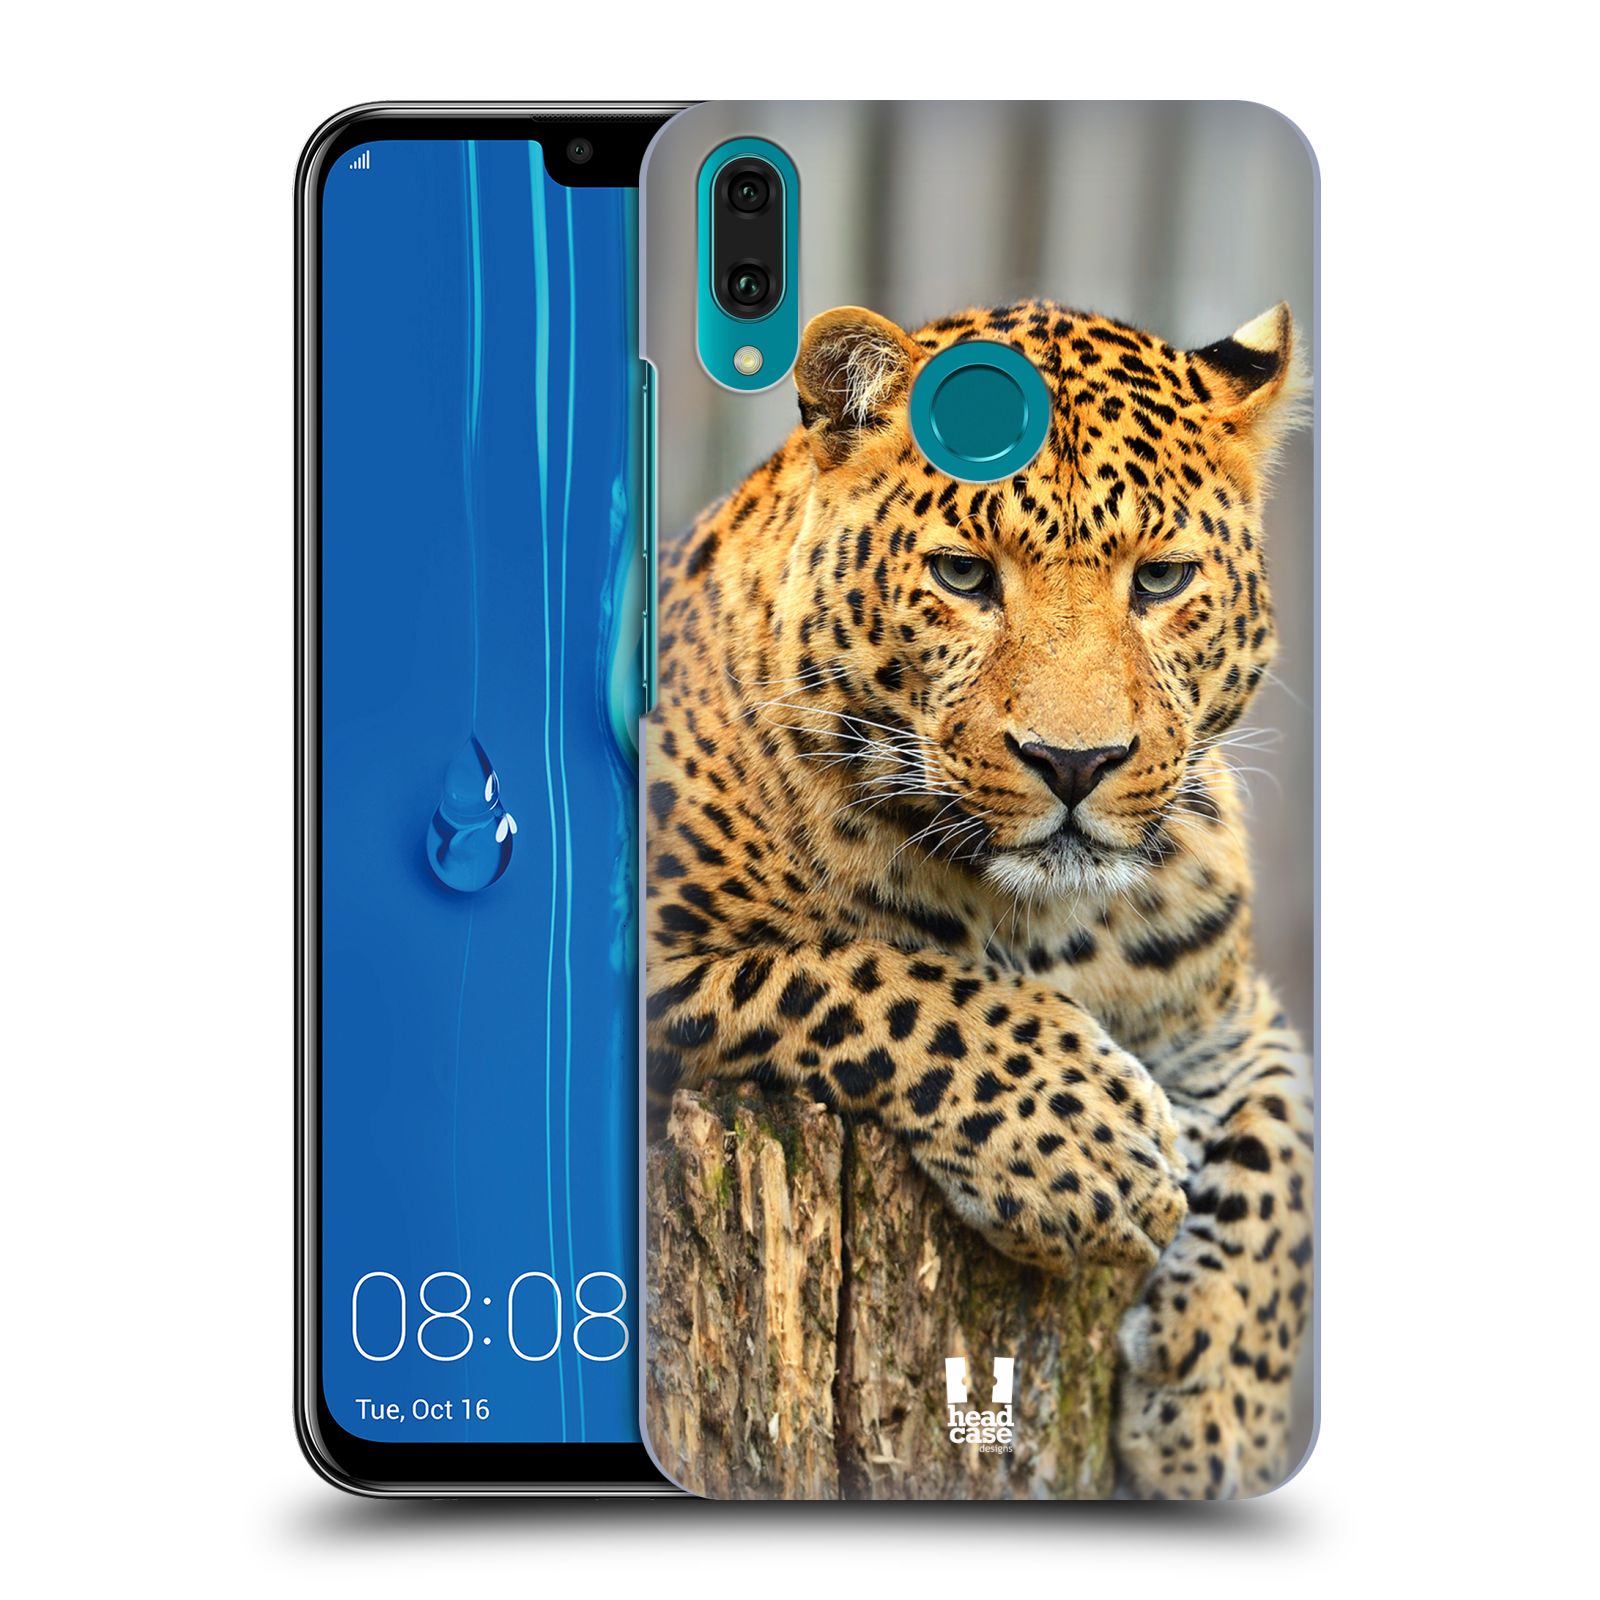 Pouzdro na mobil Huawei Y9 2019 - HEAD CASE - vzor Divočina, Divoký život a zvířata foto LEOPARD PORTRÉT